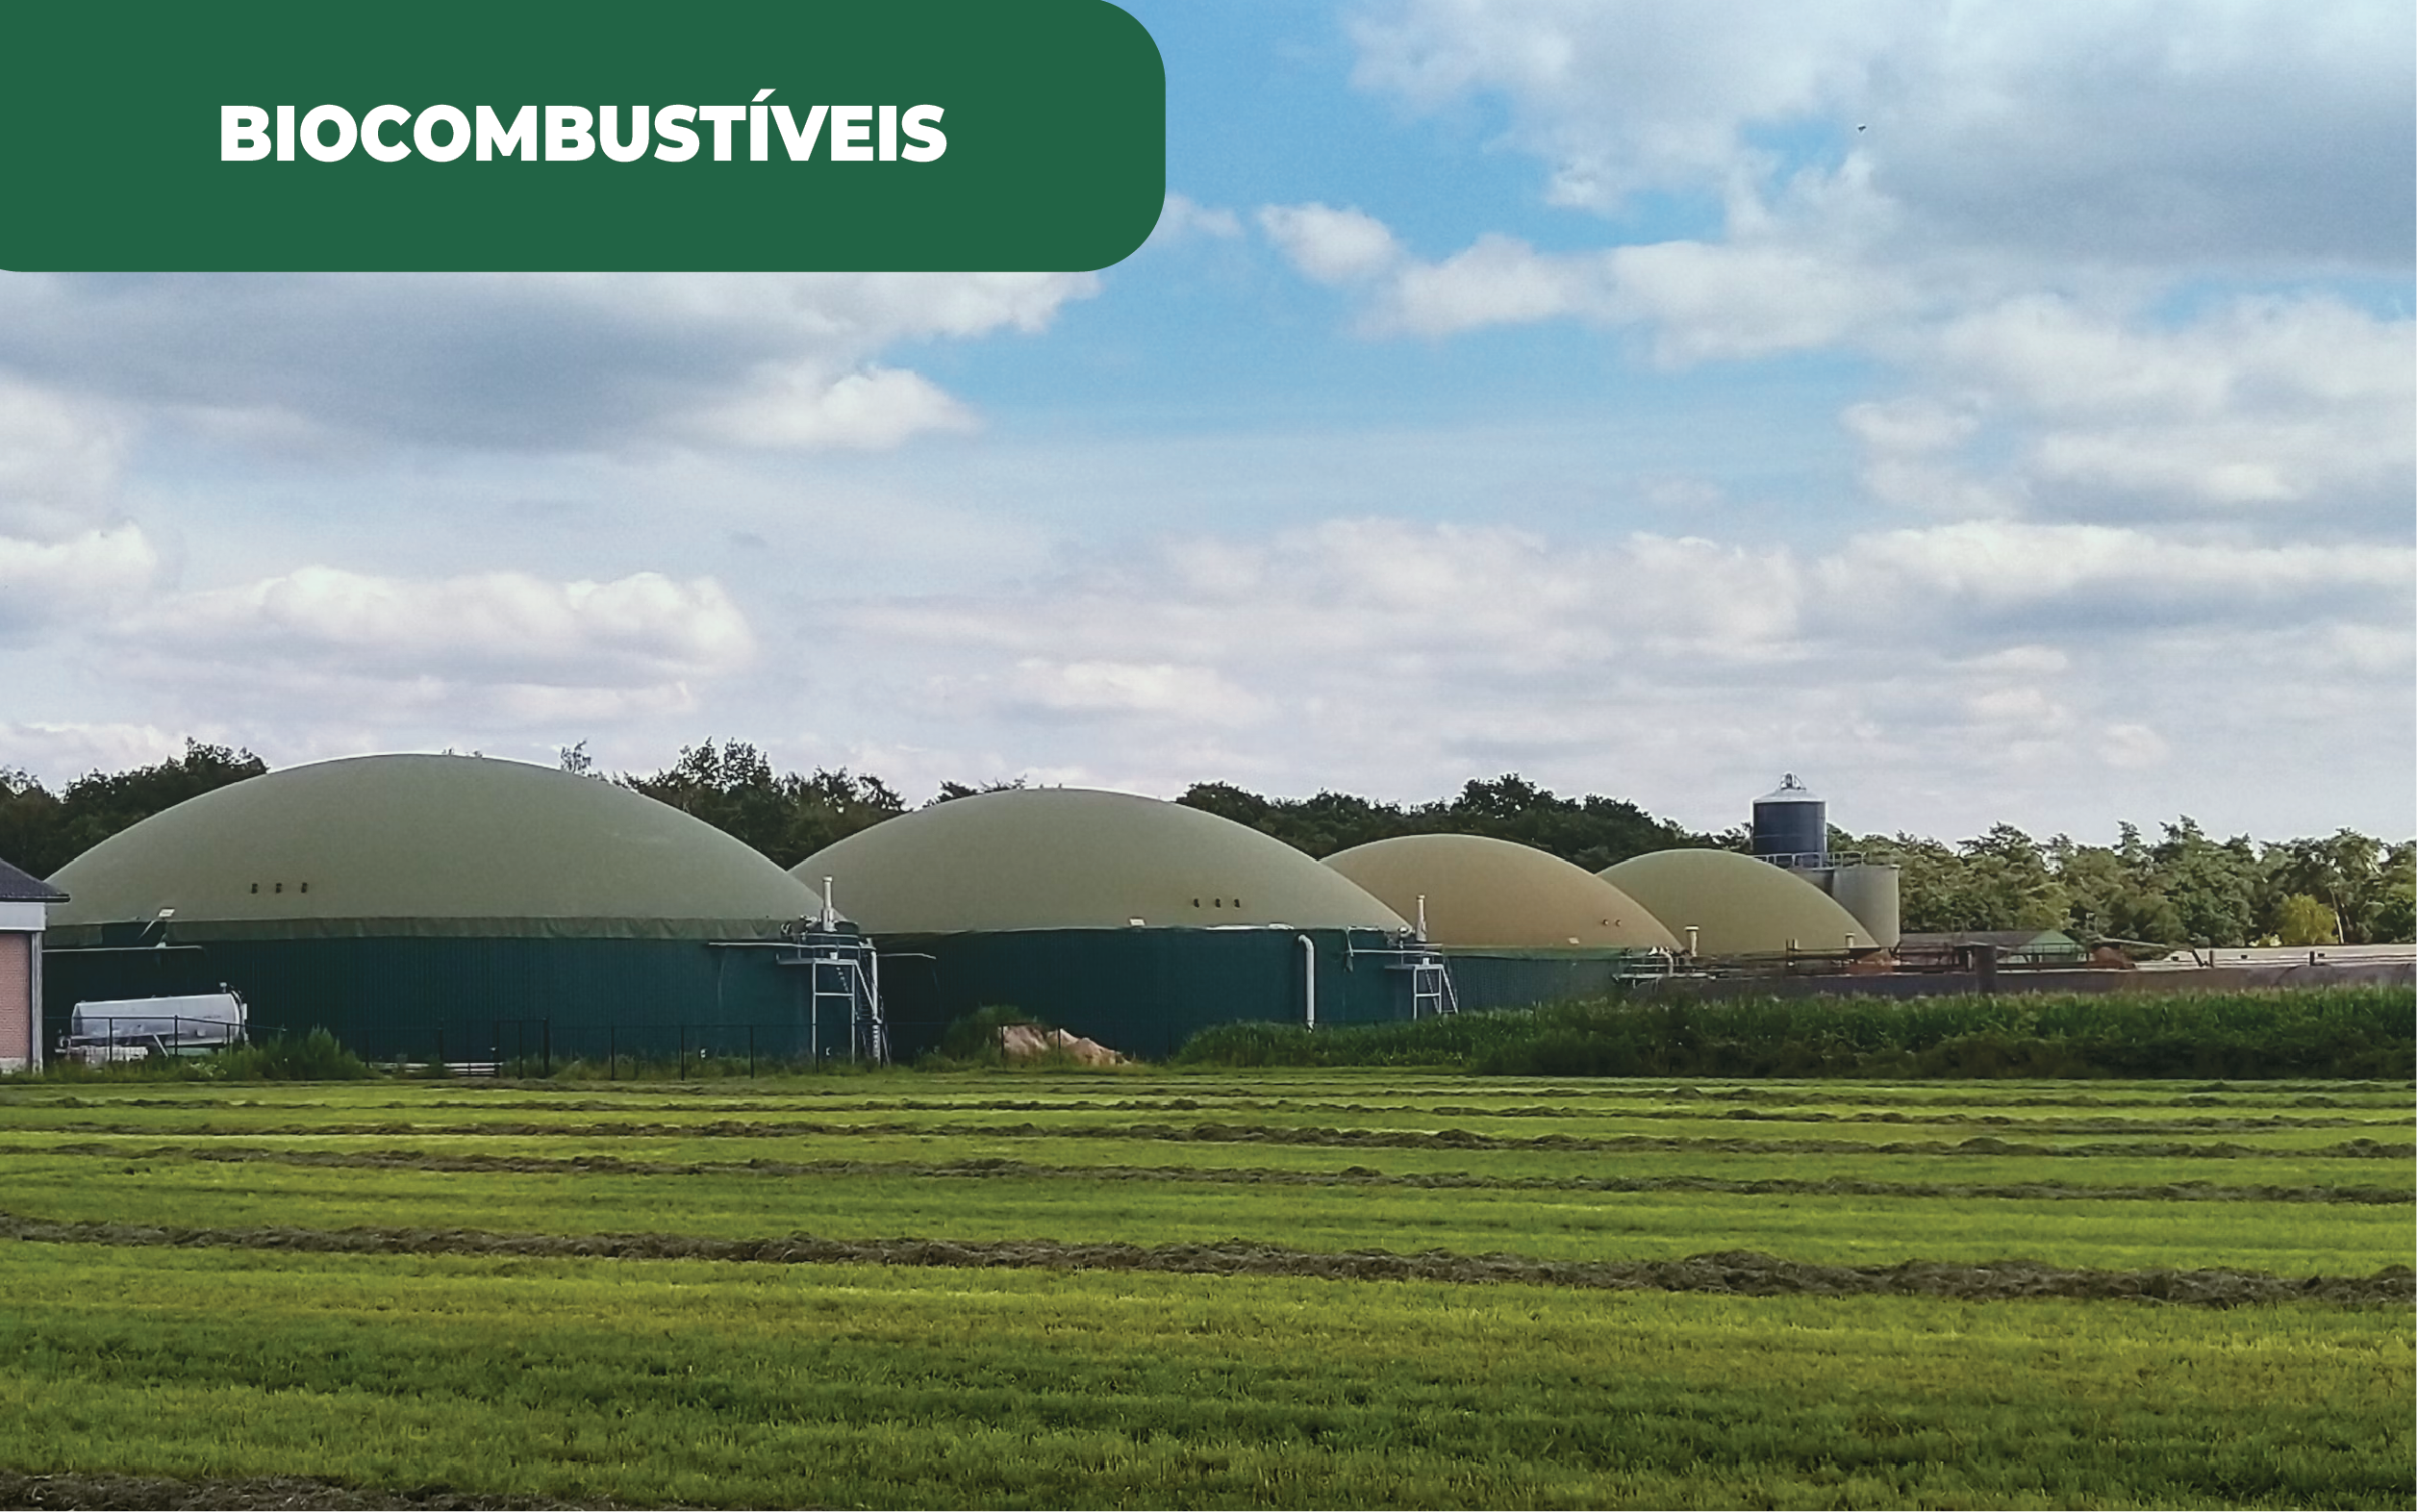 Imagem colorida de 4 estações de tratamento e transformação para biocombustíves ou biogás